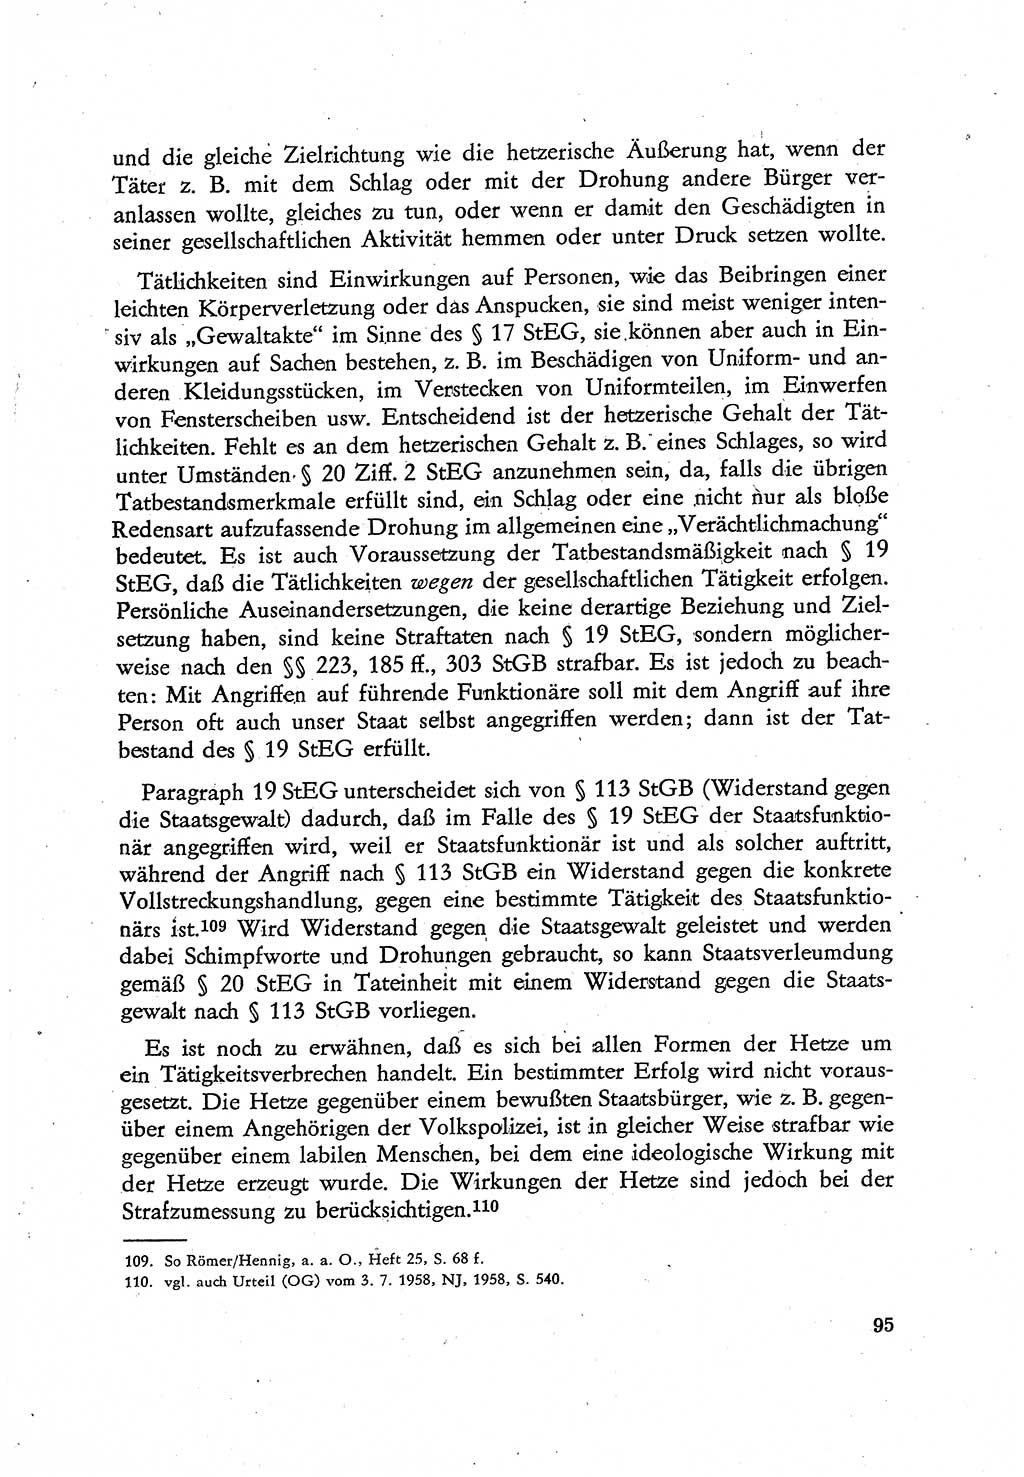 Beiträge zum Strafrecht [Deutsche Demokratische Republik (DDR)], Staatsverbrechen 1959, Seite 95 (Beitr. Strafr. DDR St.-Verbr. 1959, S. 95)